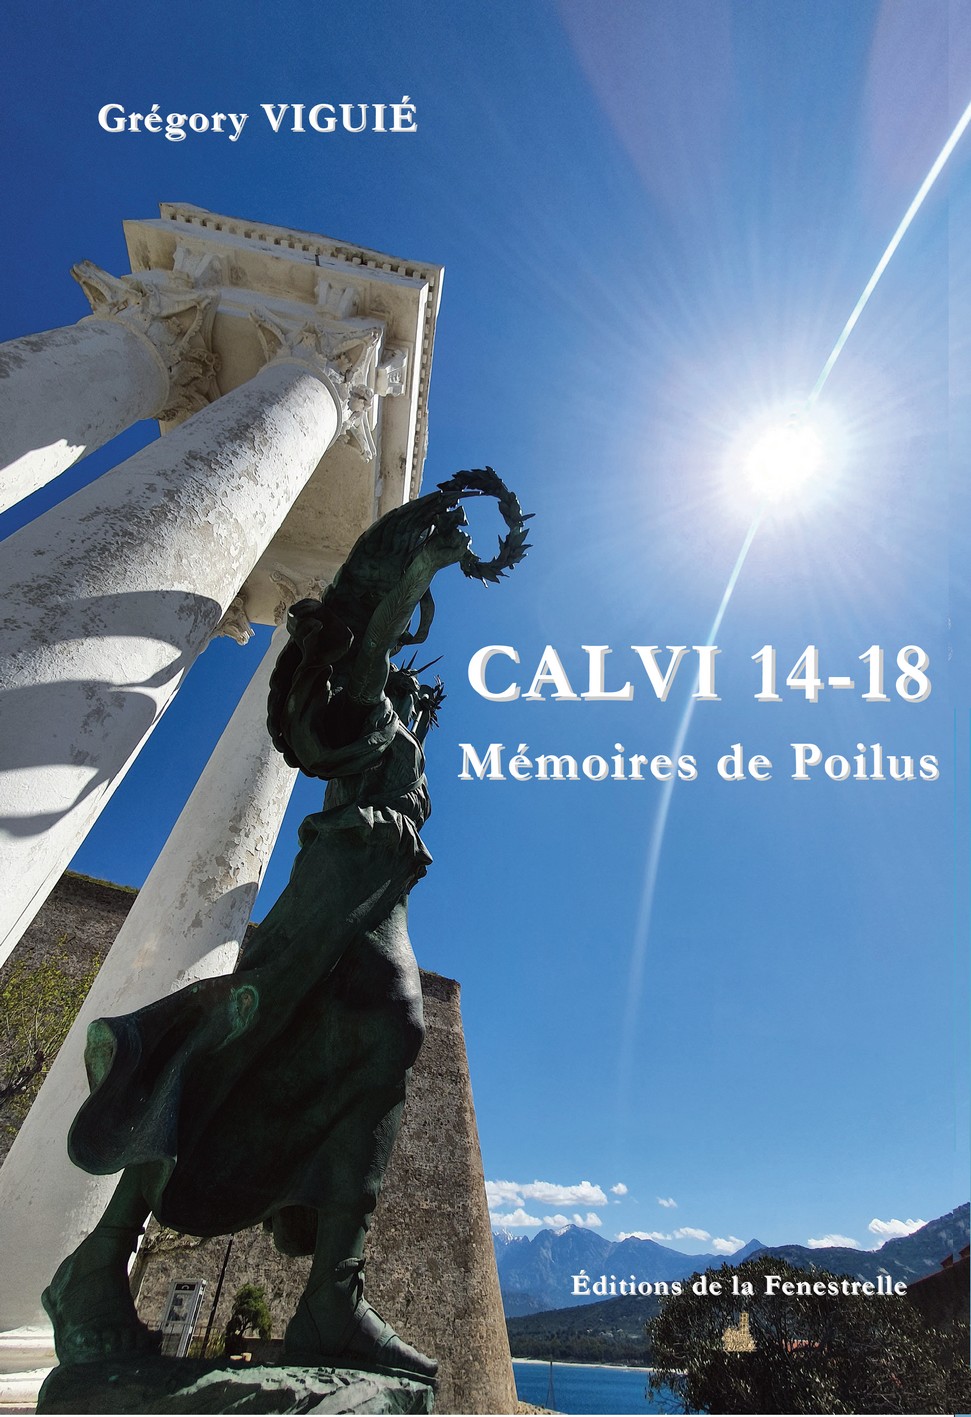 CALVI 14-18. Mémoires de Poilus - Editions de la Fenestrelle